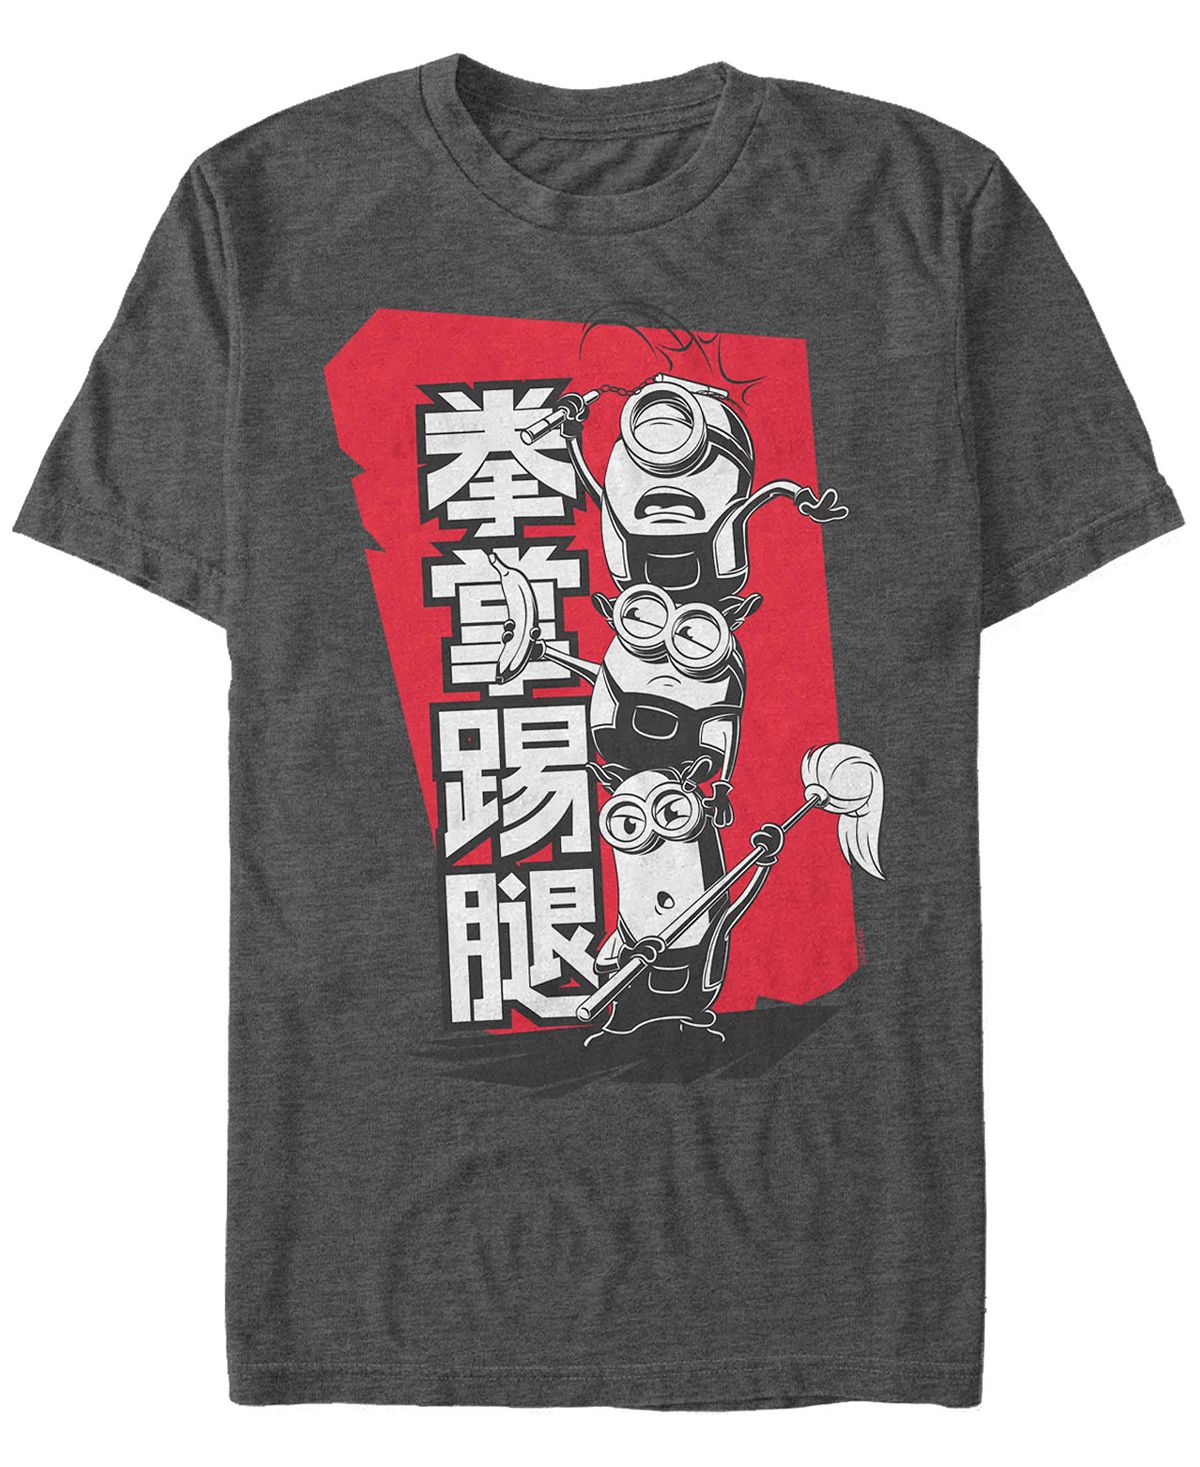 Мужская футболка с короткими рукавами Minions Kanji Stack Fifth Sun